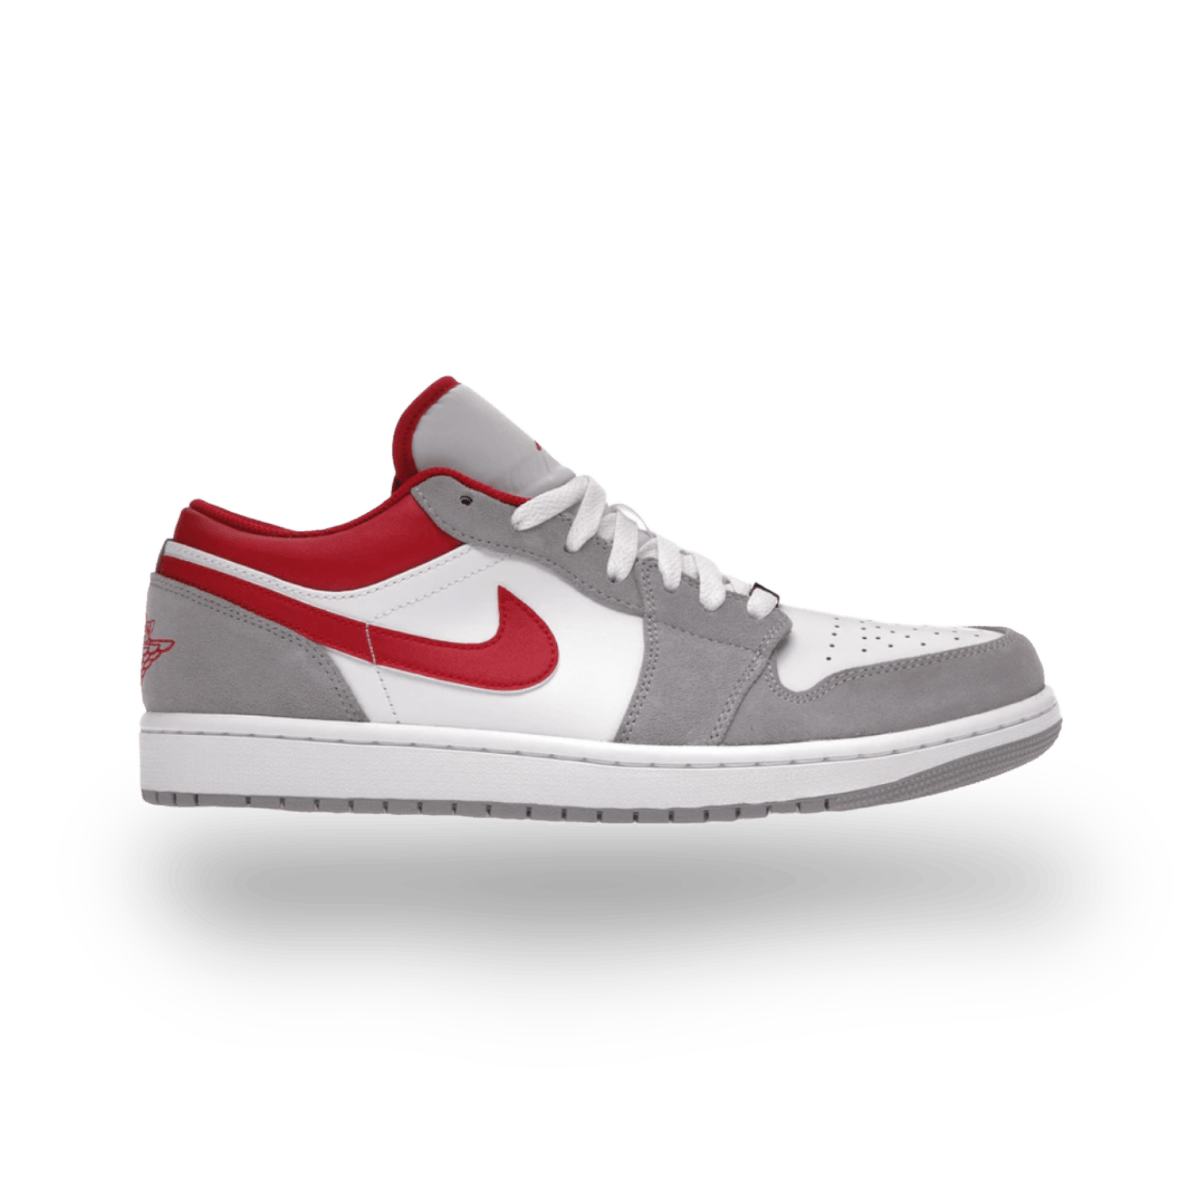 Jordan 1 Low SE Light Smoke Grey Gym Red - Pre School - Low Sneaker - Jordan - Jawns on Fire - sneakers